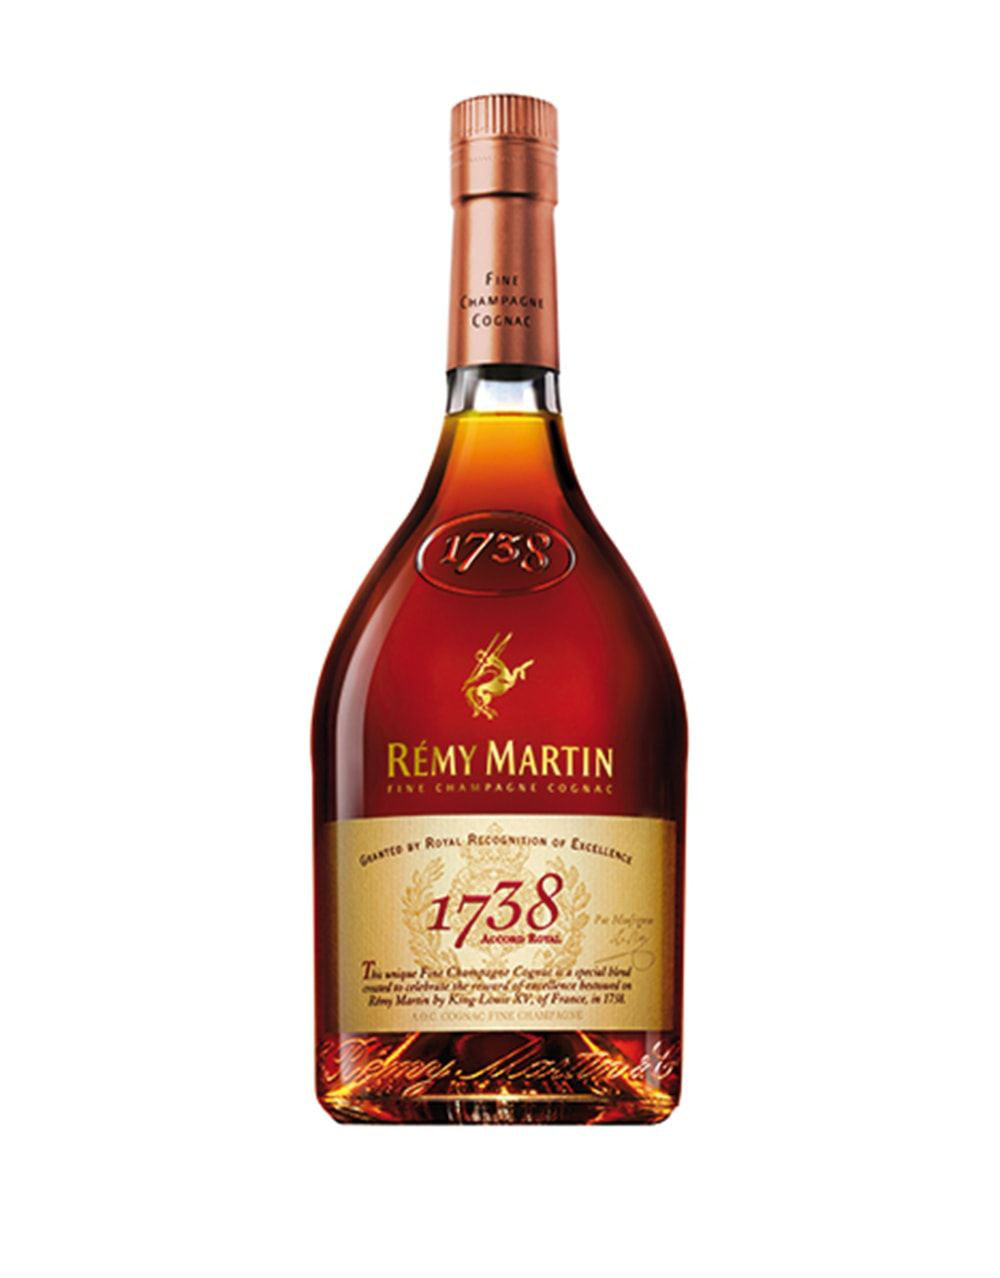 Remy Martin 1738 Accord Royal Cognac 375ml